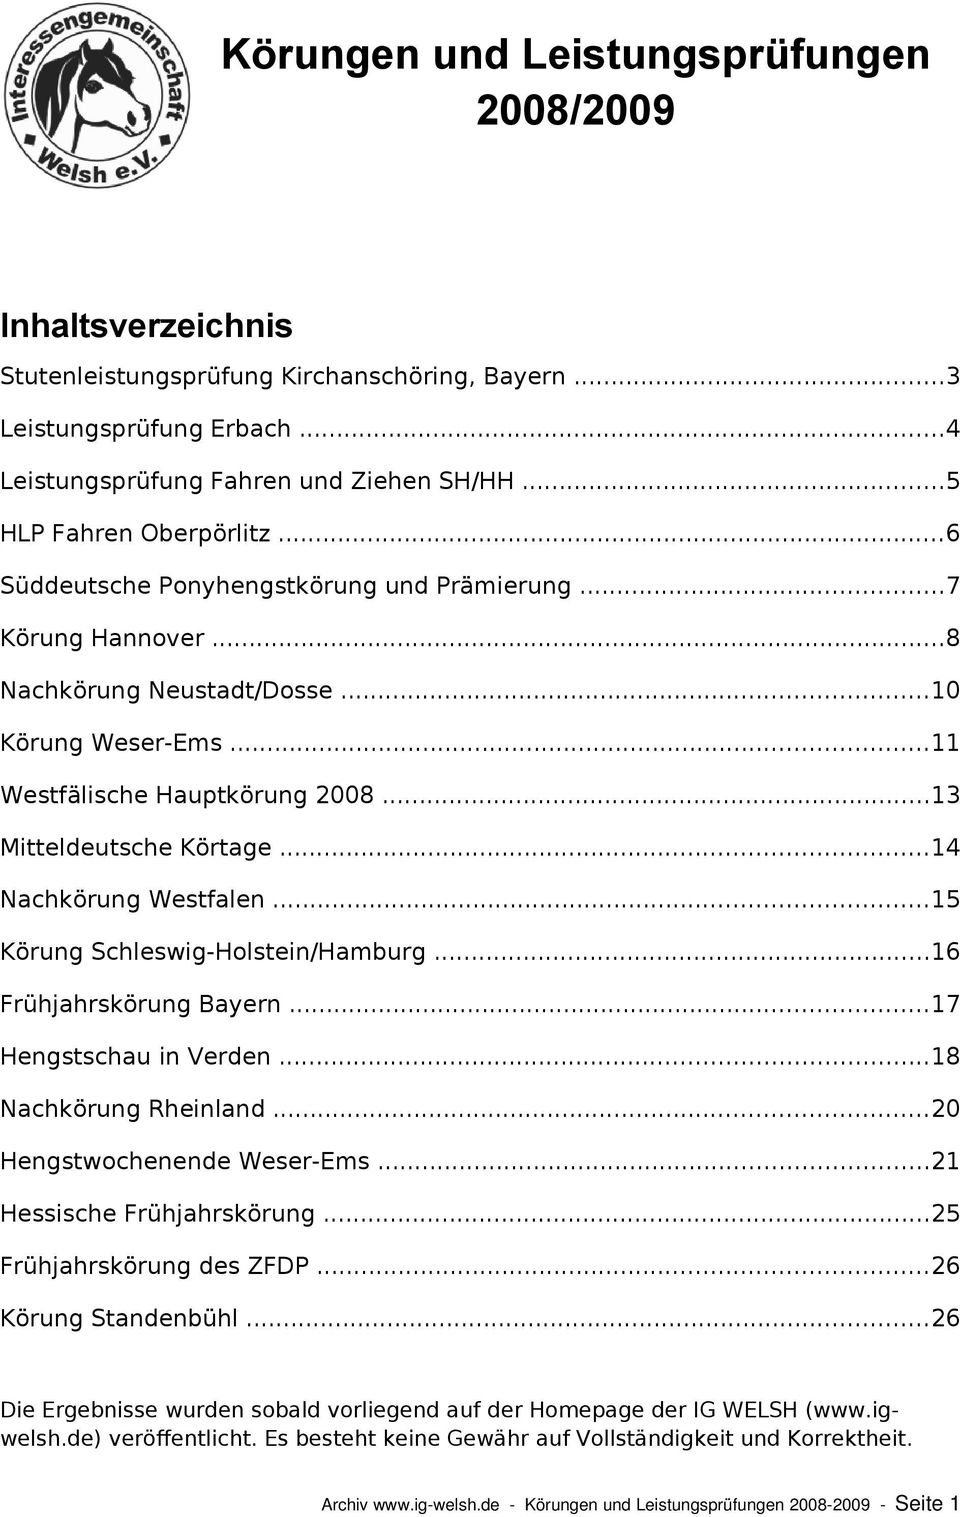 ..13 Mitteldeutsche Körtage...14 Nachkörung Westfalen...15 Körung Schleswig-Holstein/Hamburg...16 Frühjahrskörung Bayern...17 Hengstschau in Verden...18 Nachkörung Rheinland.